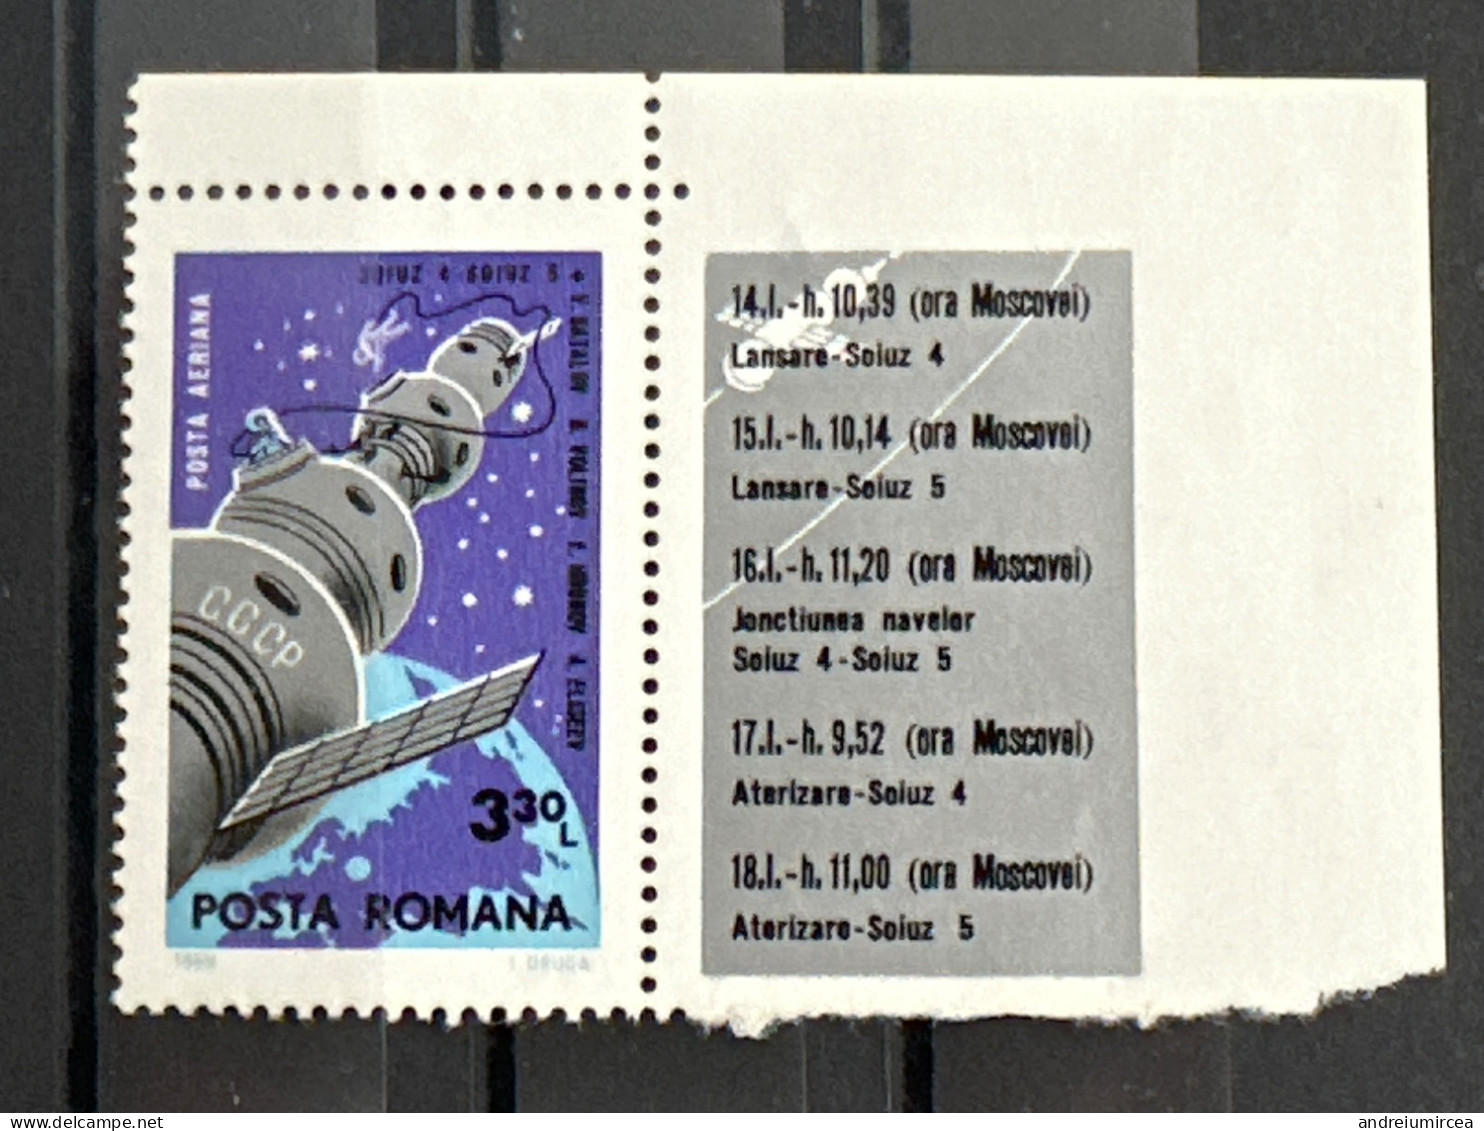 România MNH 1969  Soiuz-4;Soiuz-5 - Europe